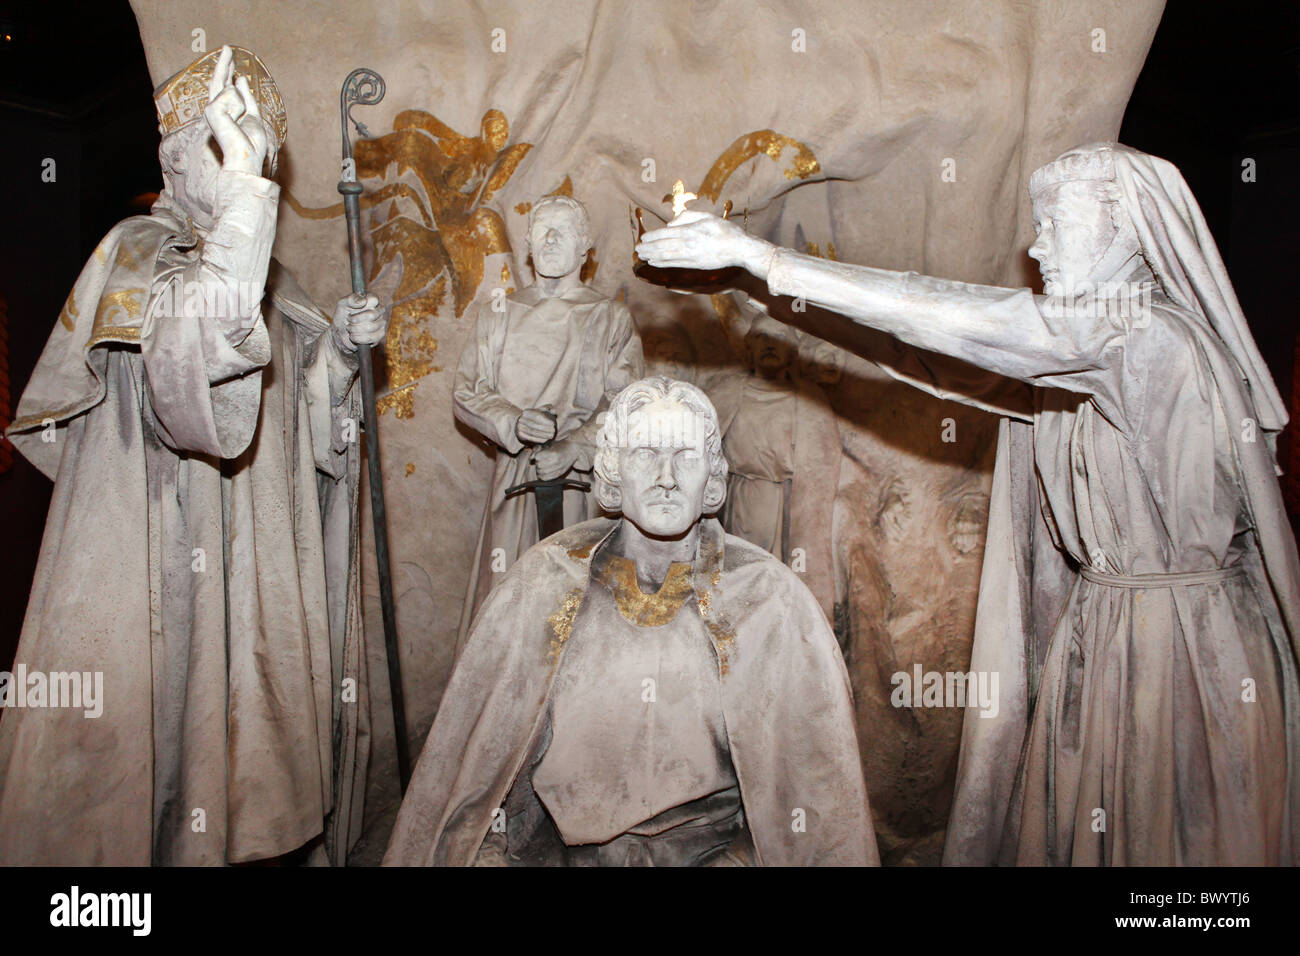 À l'intérieur du château d'Édimbourg- l'histoire /exposition des joyaux de la Couronne écossaise. Banque D'Images